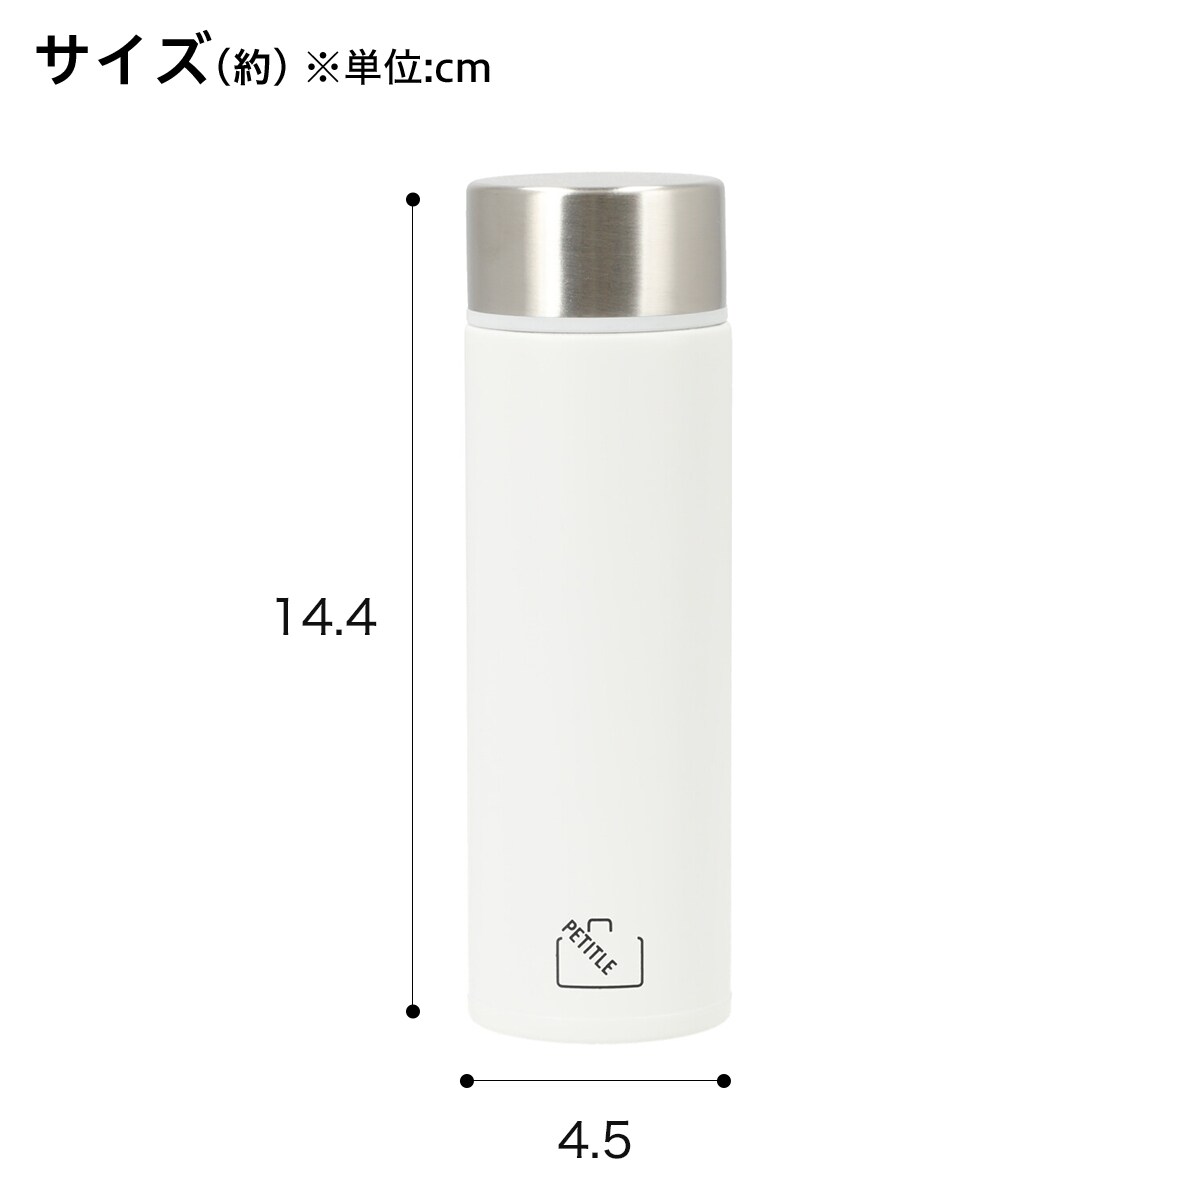 ステンレスボトル プチトル 160ml(ホワイト)   【1年保証】